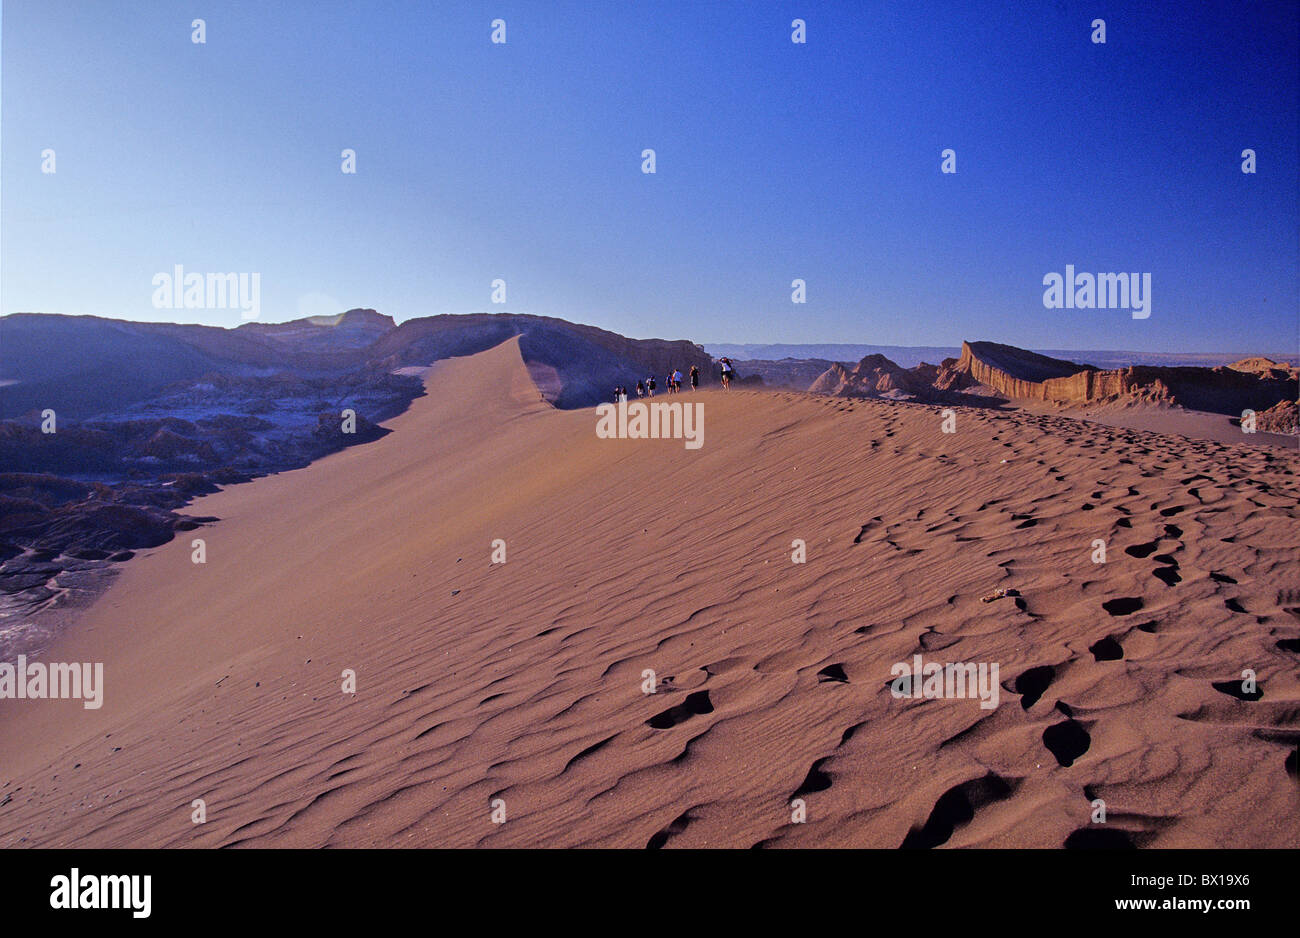 Désert d'Atacama désert du nord du Chili Le Chili Amérique du Sud Amérique latine Provincia El Loa de sable de San Pedro de Atacama Banque D'Images